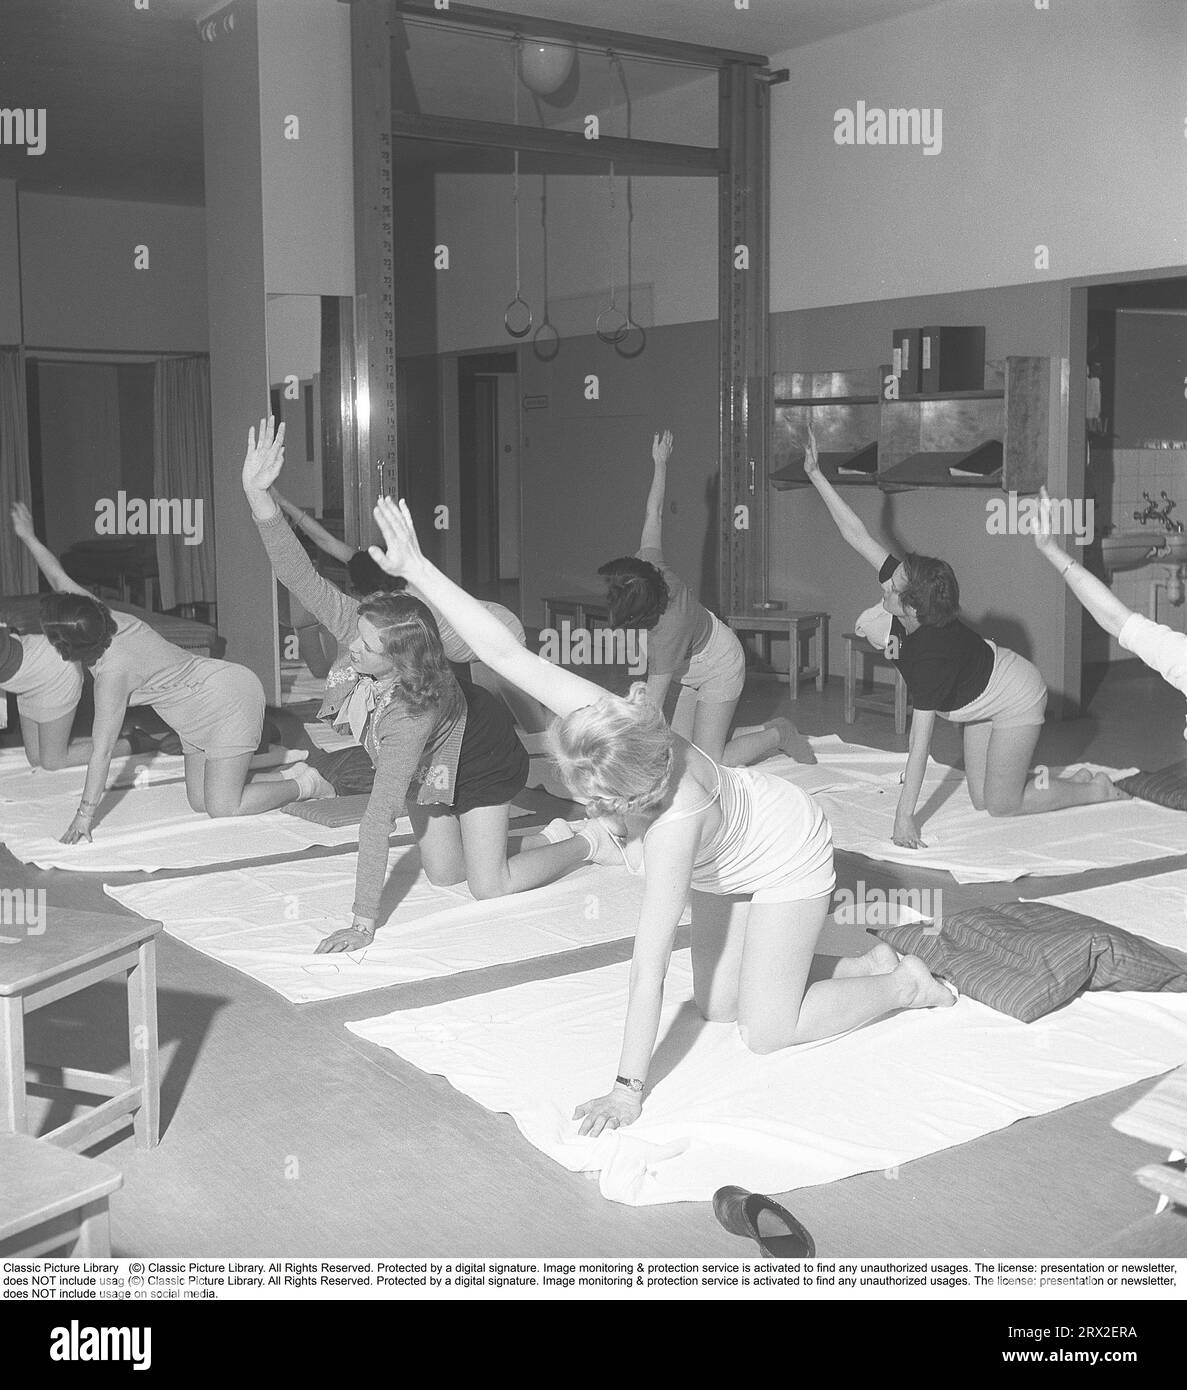 Ginnastica in passato. In una palestra, un gruppo di donne si inginocchiano e allungano le braccia in un movimento. Le giovani donne si prendono una pausa dal lavoro e fanno ginnastica durante l'orario di lavoro. La ginnastica da ufficio era un'invenzione moderna negli anni '1940, quando l'assistenza sanitaria per i dipendenti cominciò ad essere implementata. Svezia 1949. Kristoffersson rif. AX72-7 Foto Stock